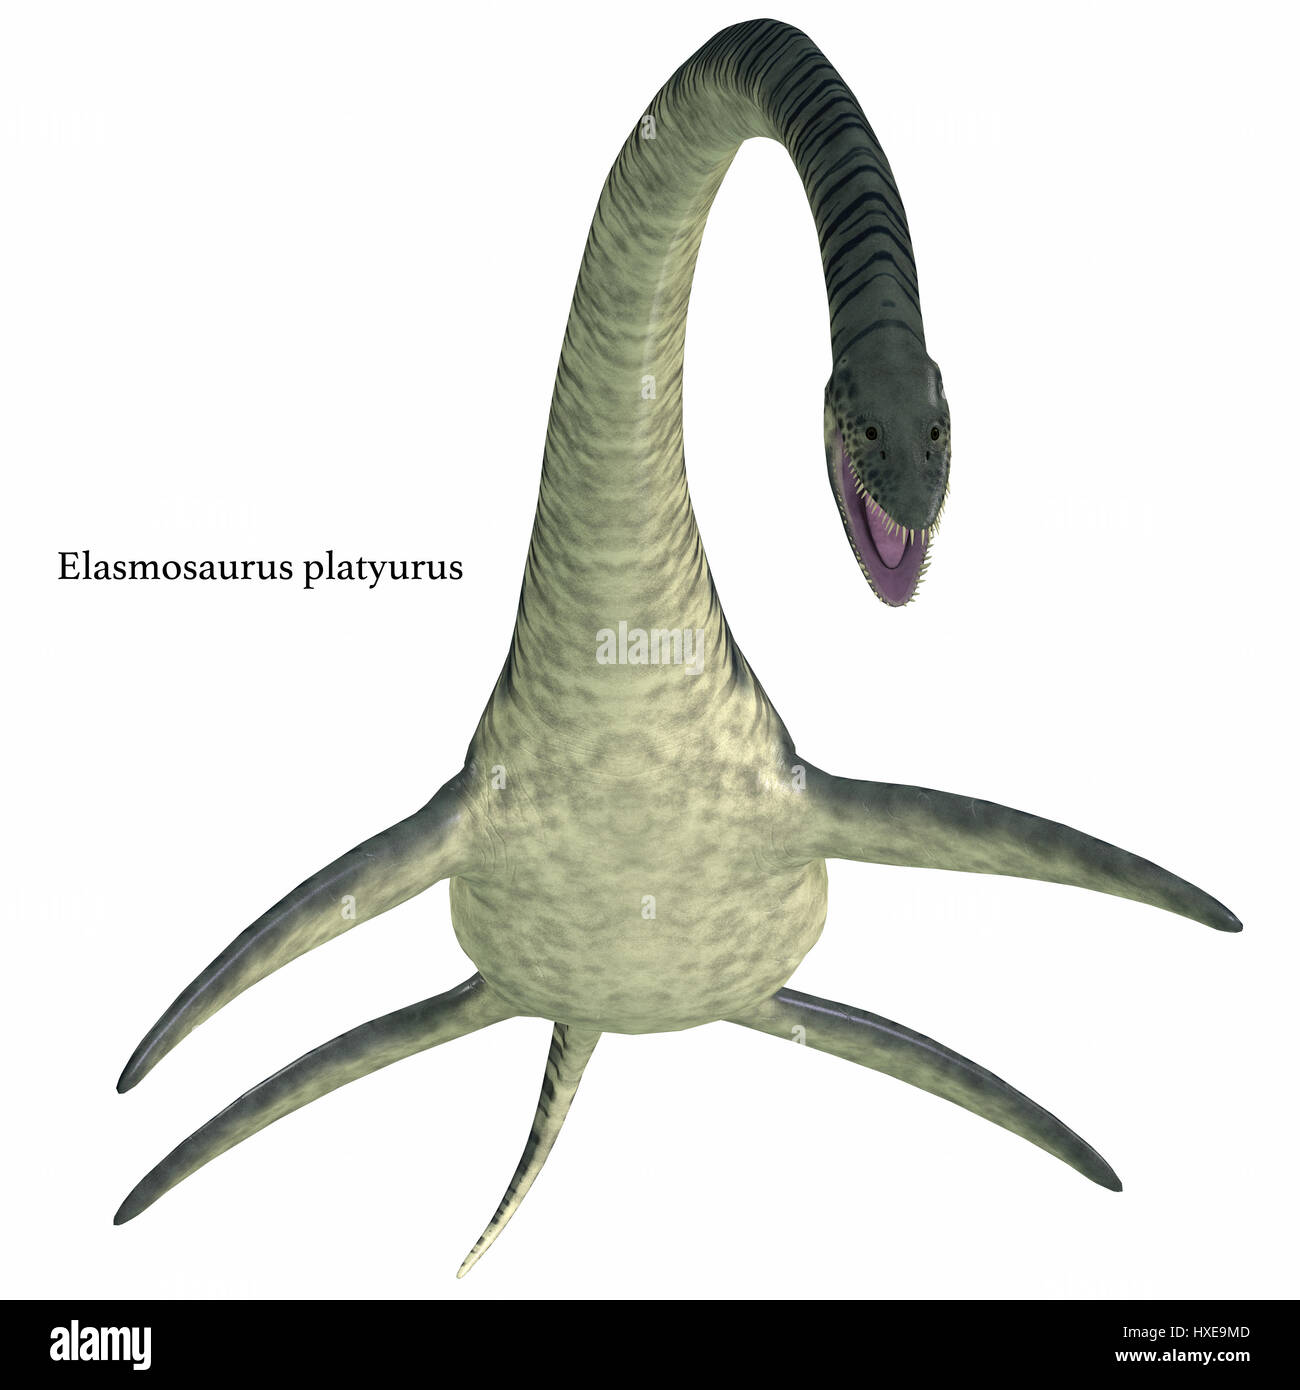 Elasmosaurus era un plesiosaurio de reptiles marinos que vivieron en América del Norte los mares en el período Cretácico. Foto de stock